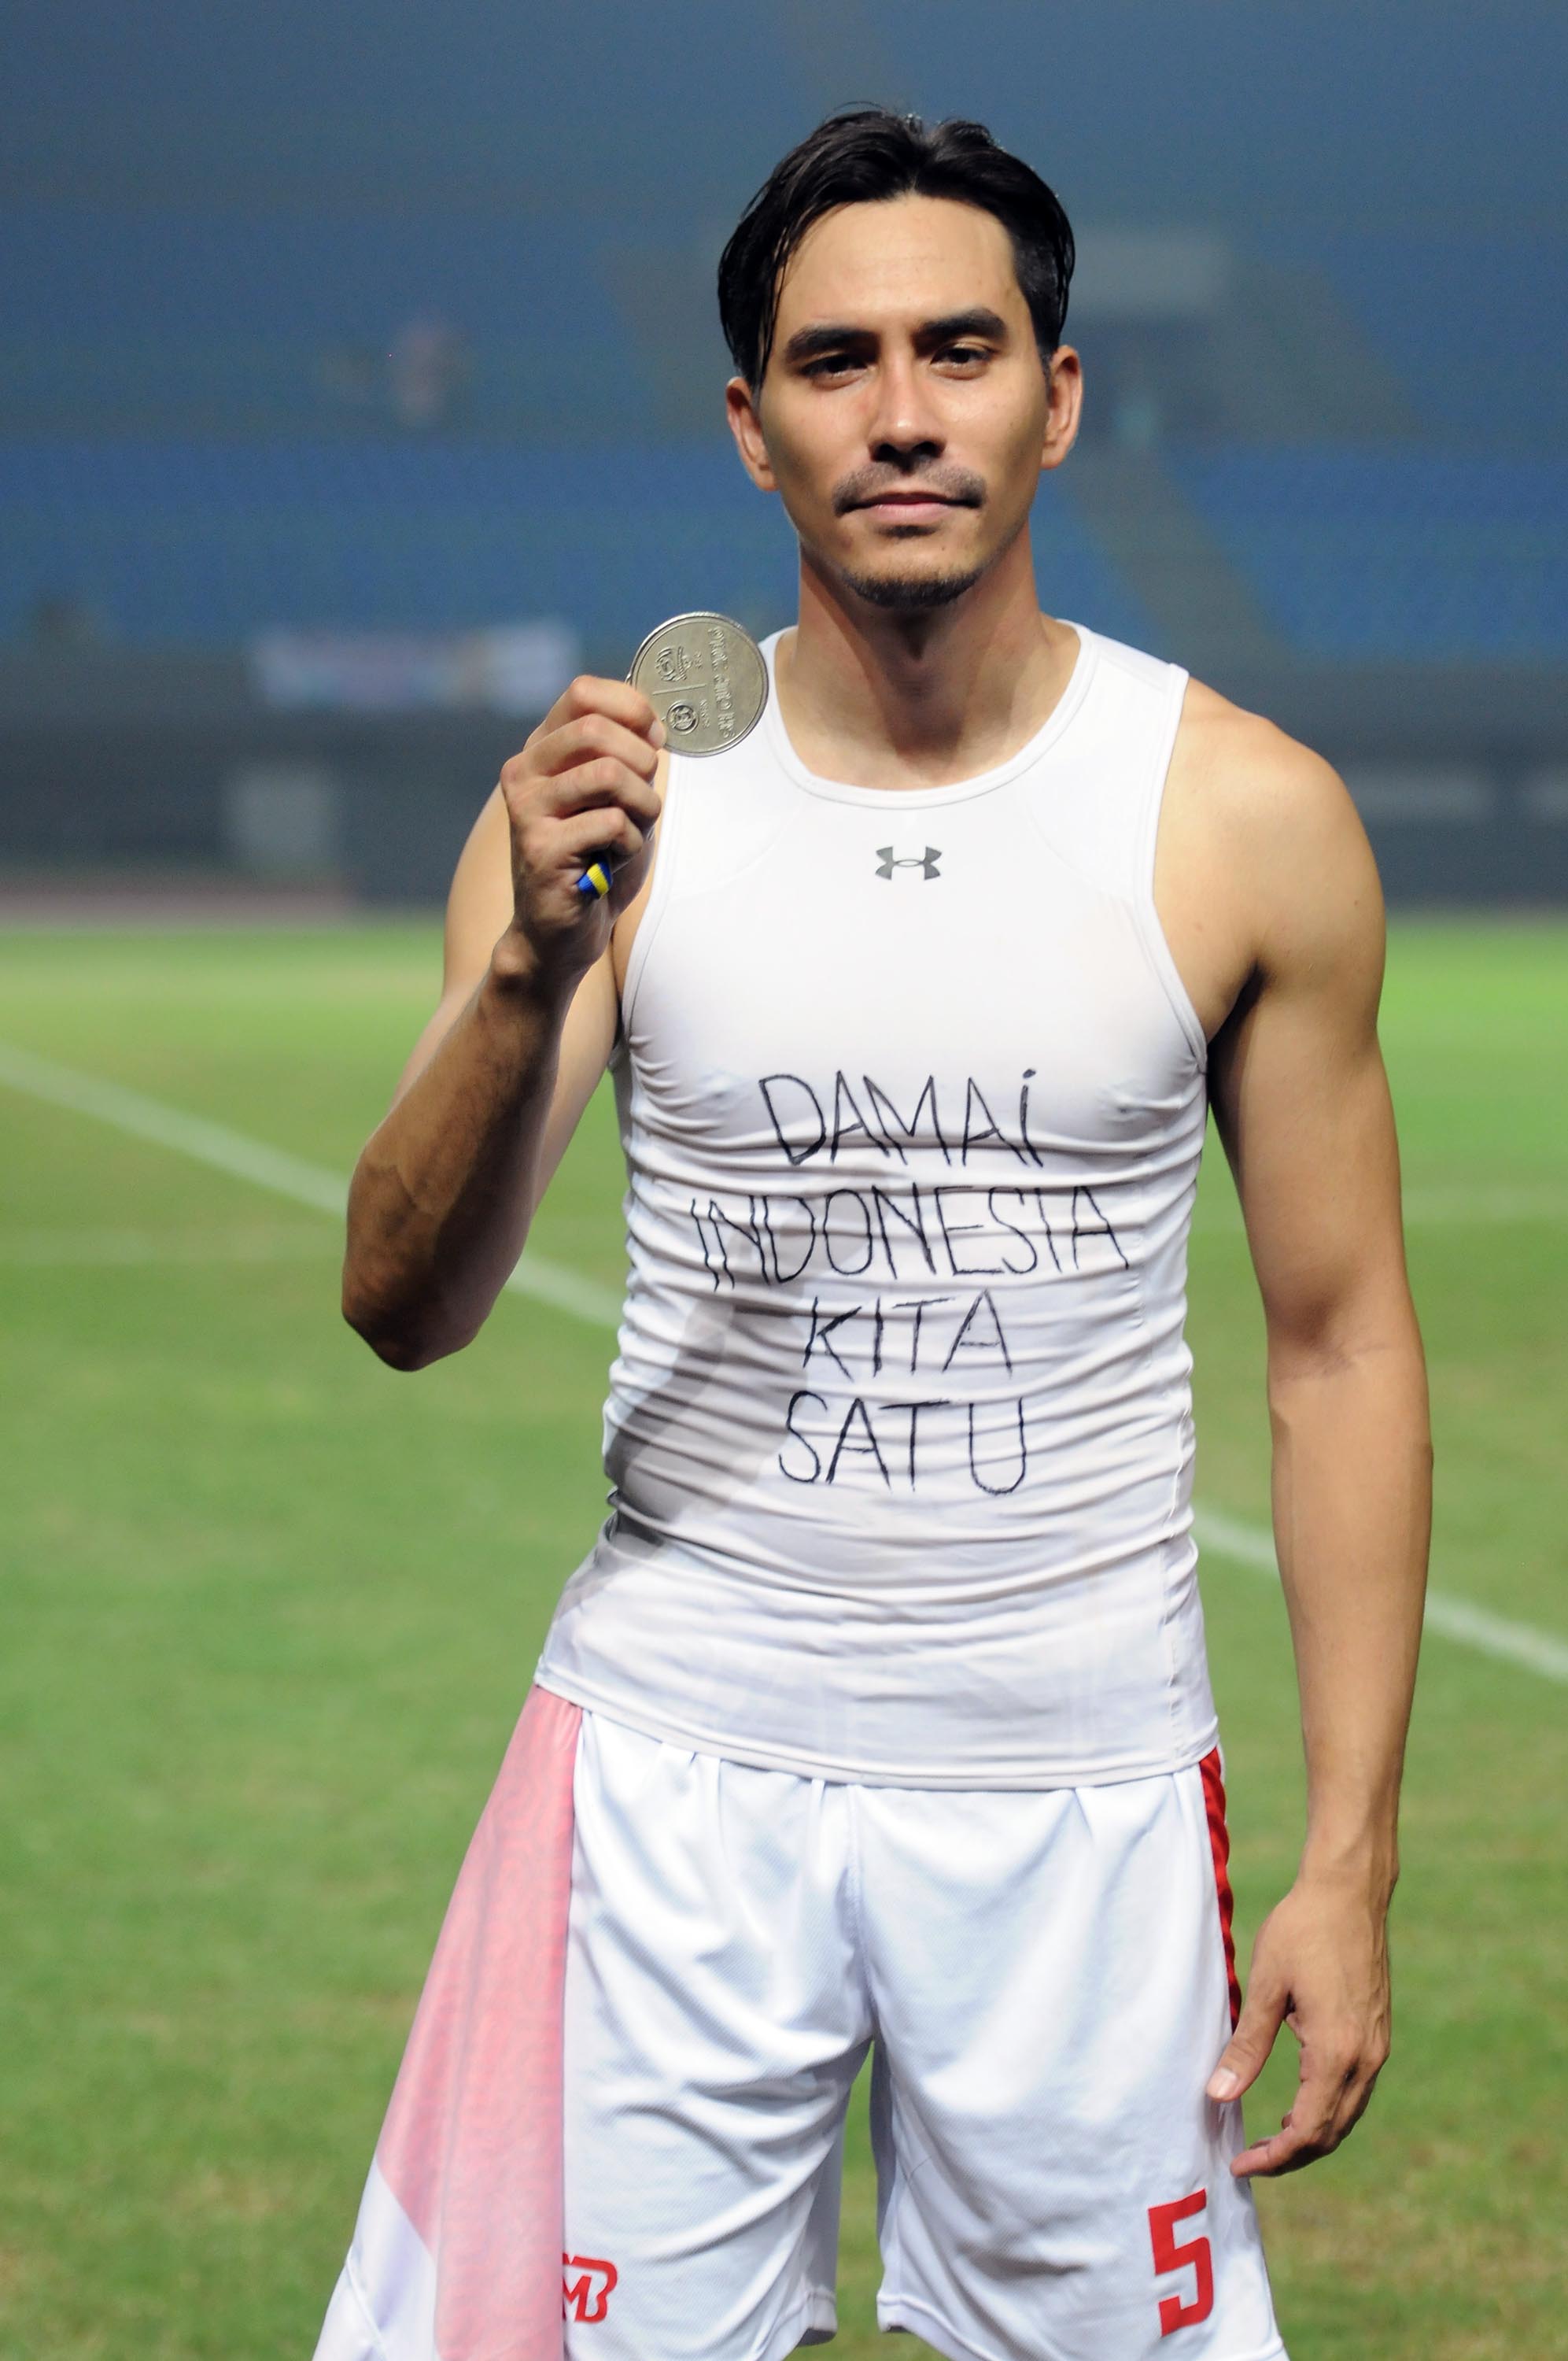 Darius beri pesan perdamaian lewat gol yang dibuatnya © KapanLagi.com®/Muhammad Akrom Sukarya